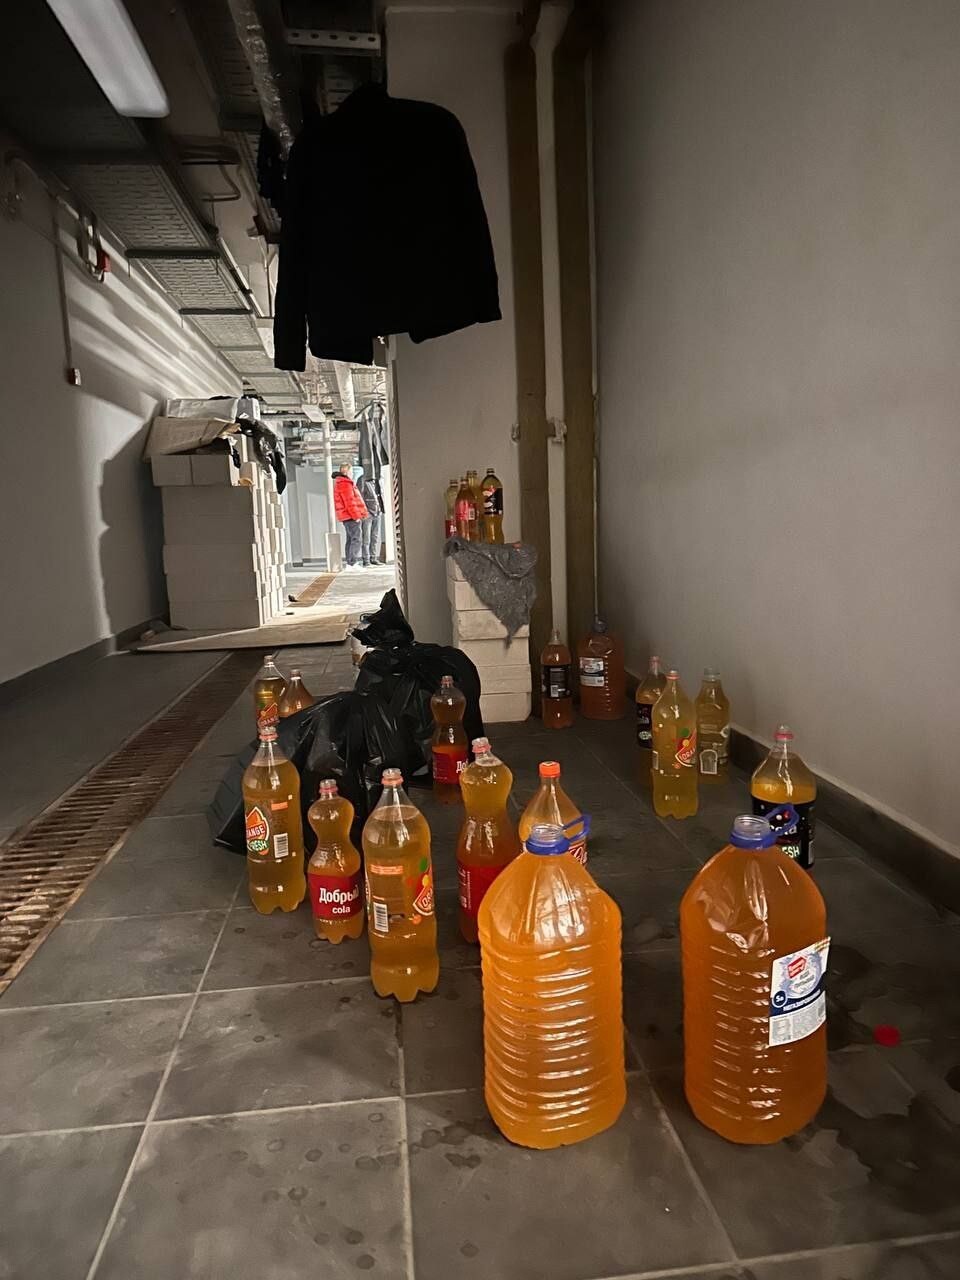 Моча в пятилитровых бутылках и куча матрасов: мигранты оккупировали крышу в столичном ЖК бизнес-класса